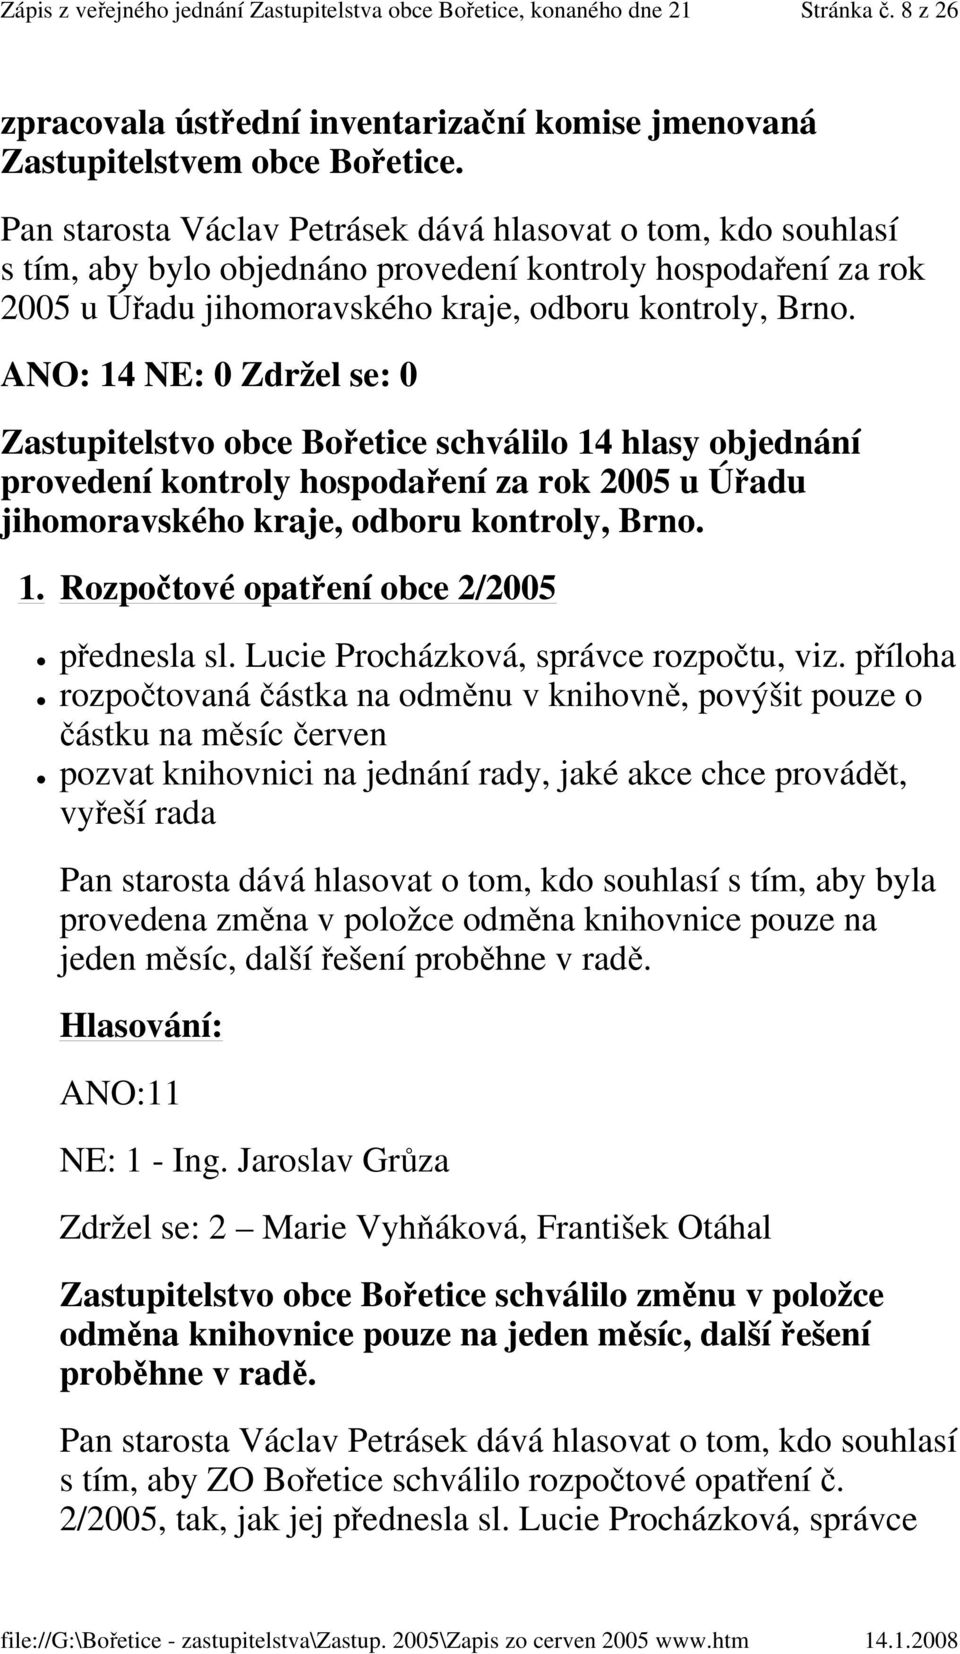 ANO: 14 NE: 0 Zdržel se: 0 Zastupitelstvo obce Bořetice schválilo 14 hlasy objednání provedení kontroly hospodaření za rok 2005 u Úřadu jihomoravského kraje, odboru kontroly, Brno. 1. Rozpočtové opatření obce 2/2005 přednesla sl.